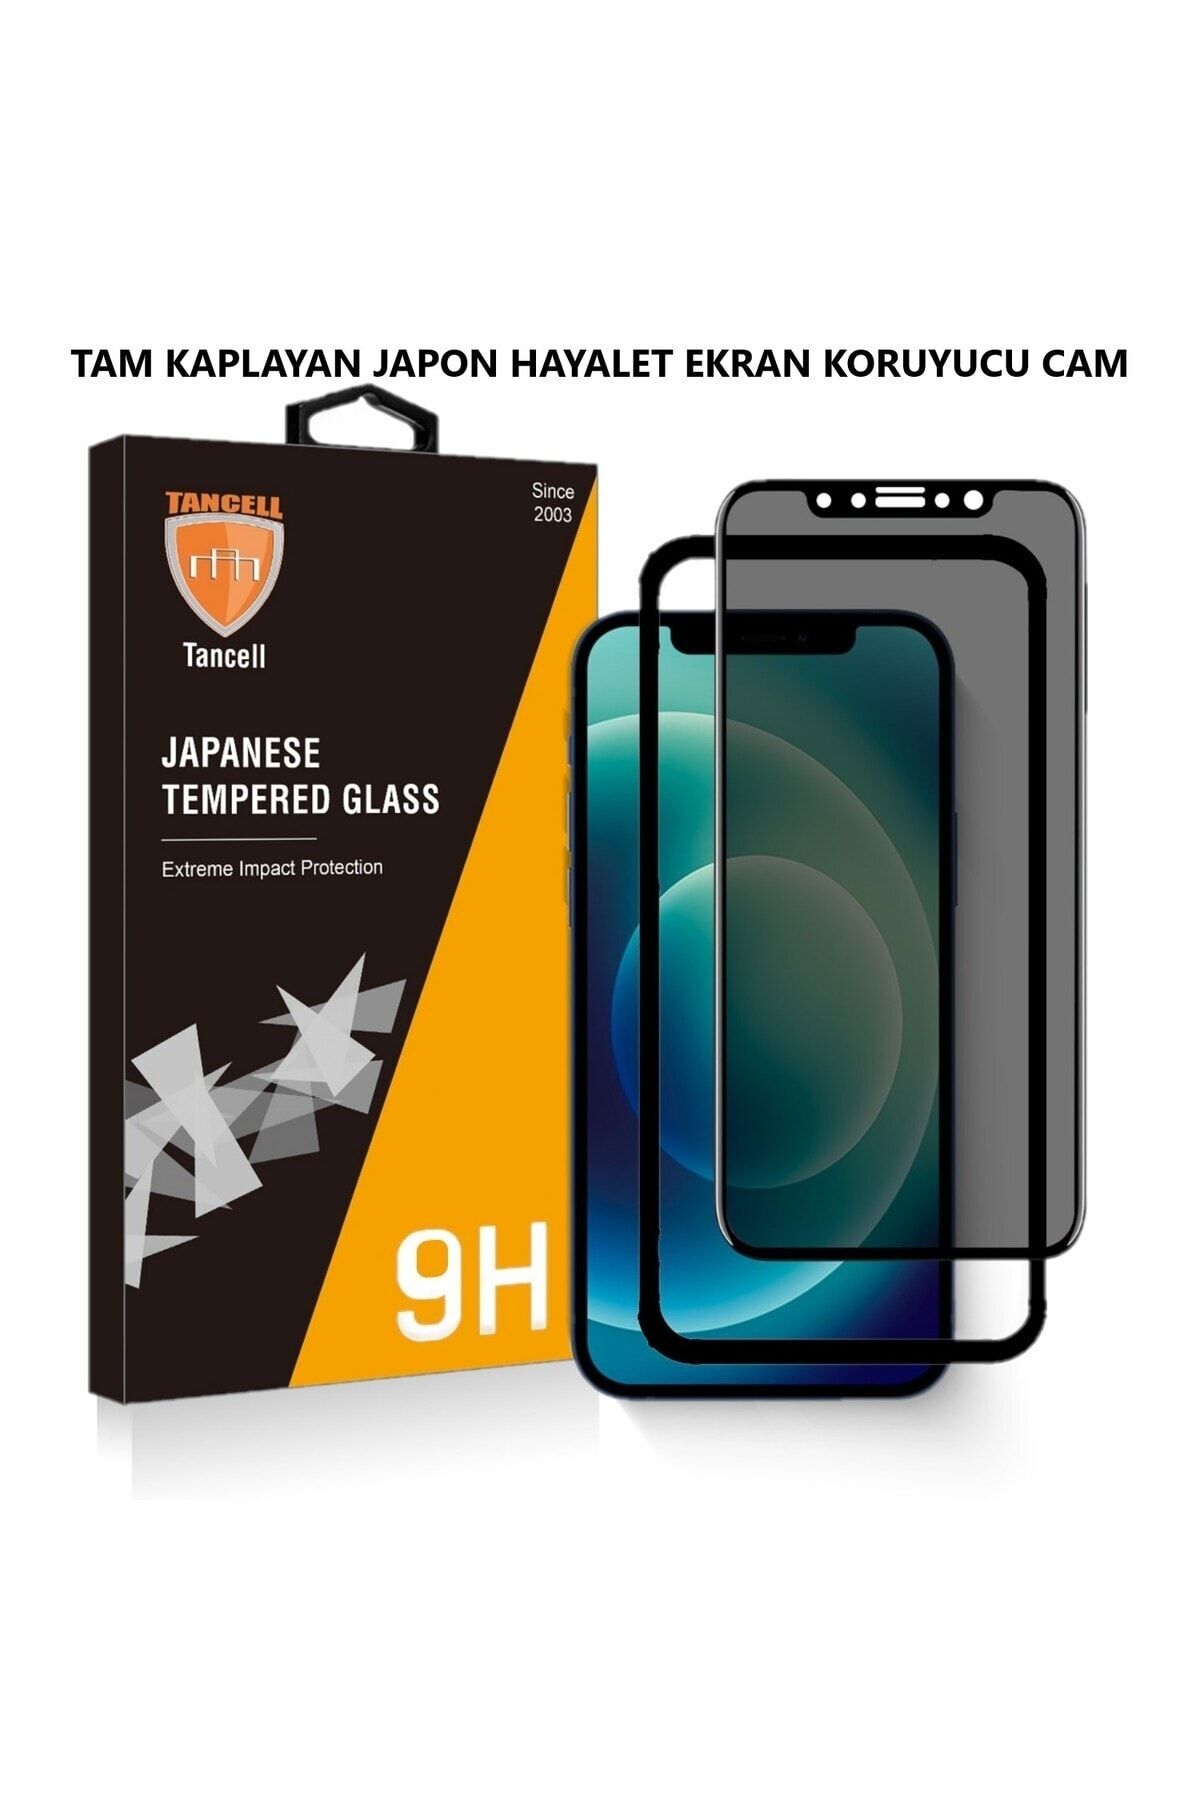 TANCELL İphone 12/12 Pro Uyumlu Hayalet Ekran Koruyucu Tam Kaplayan Japon Kırılmaz Cam 6,1 Inc (1 ADET)